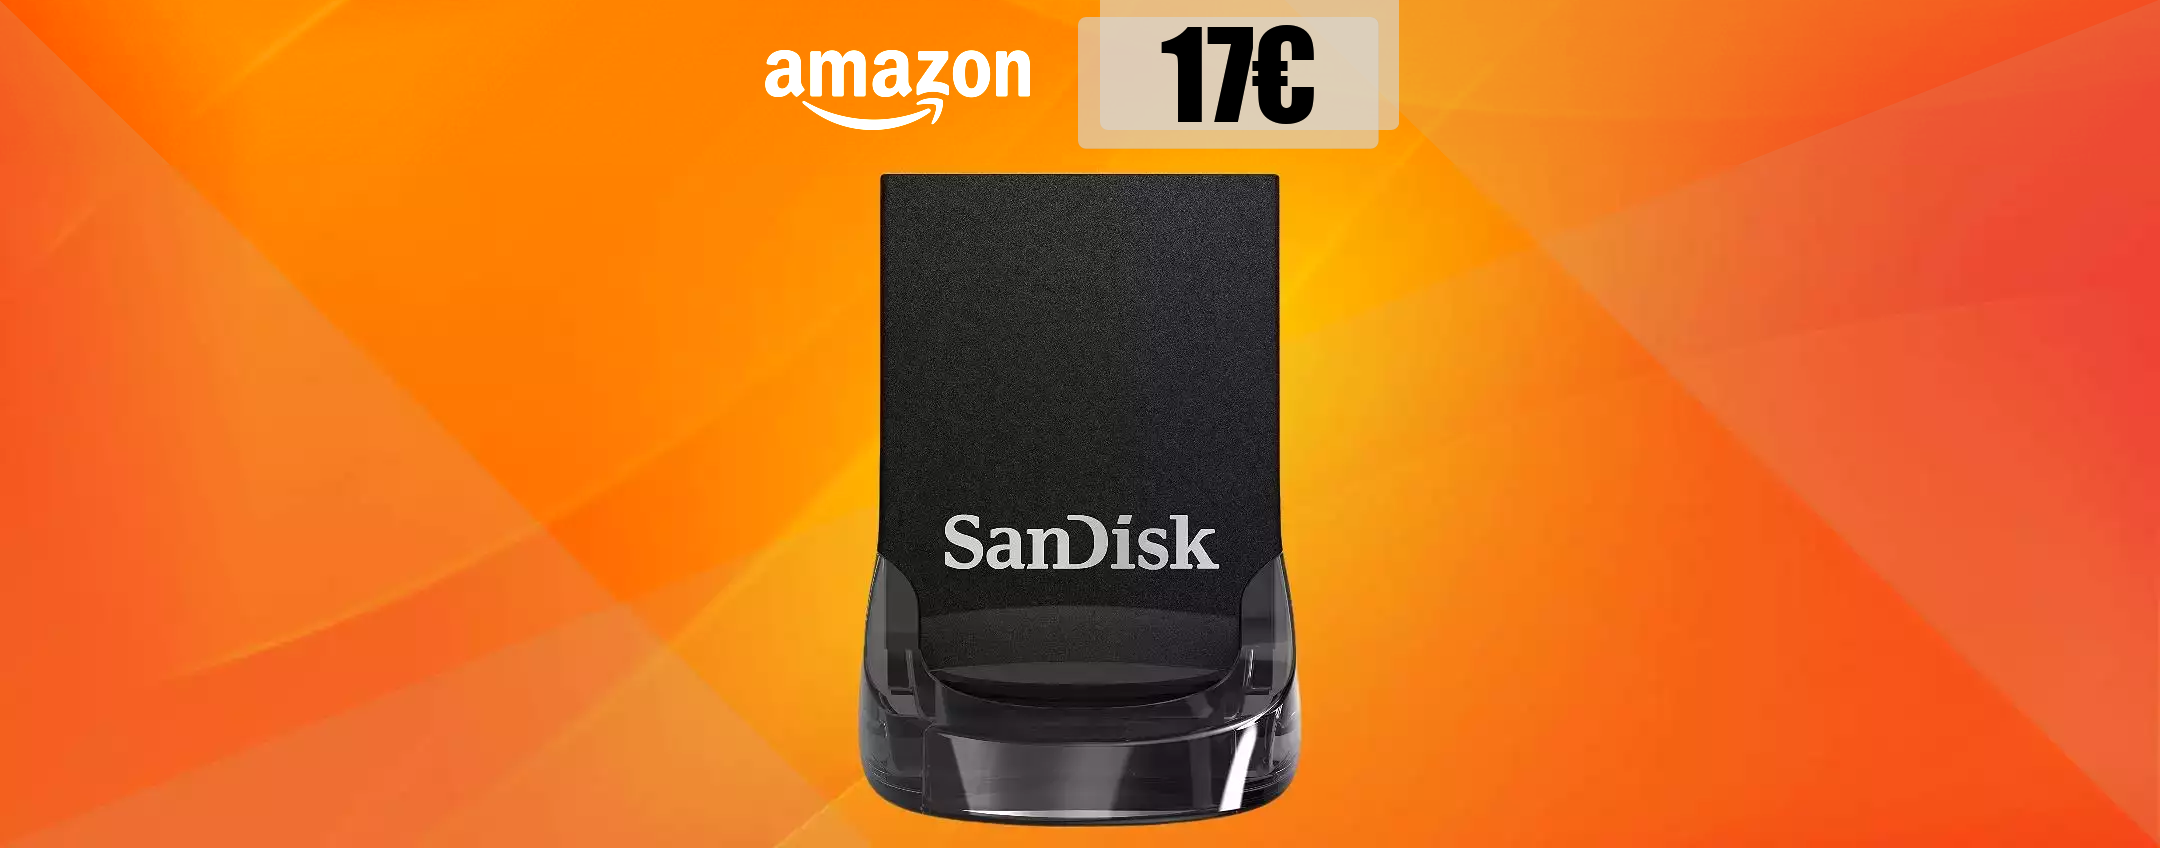 Chiavetta USB 128GB, velocità strabiliante in un corpo minuscolo: 17€